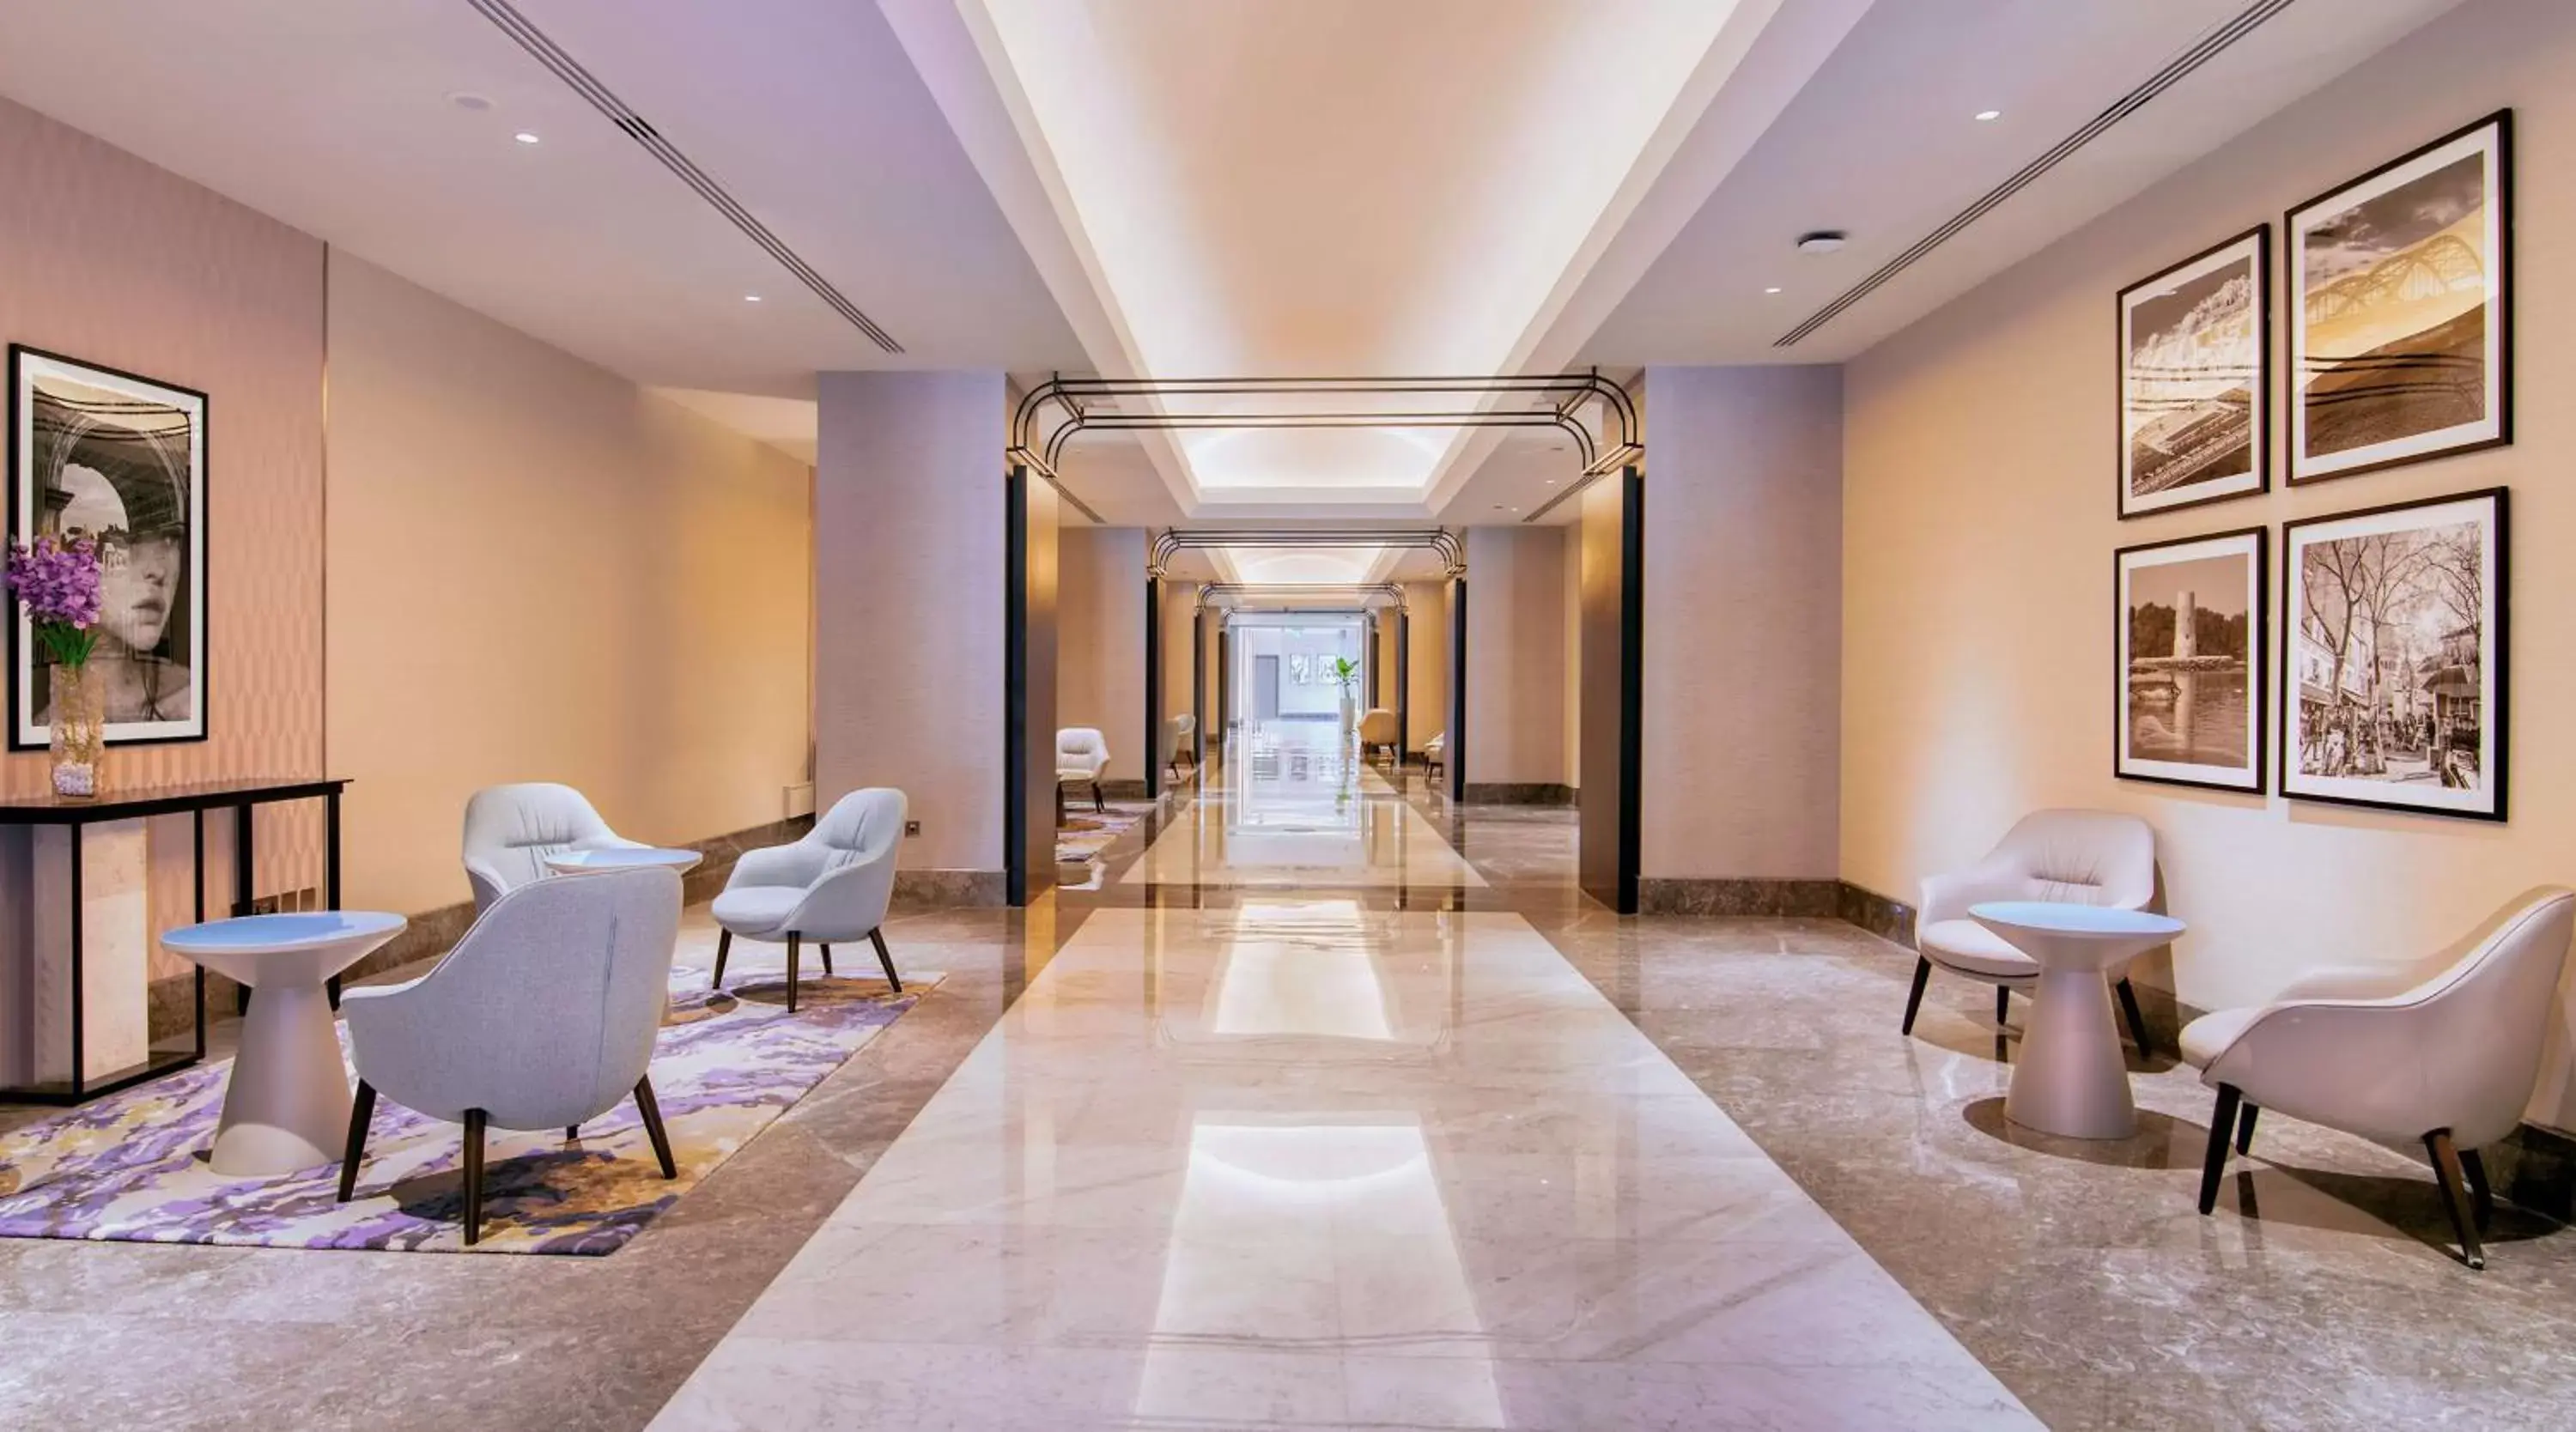 Lobby or reception in Radisson Blu Hotel & Resort, Abu Dhabi Corniche